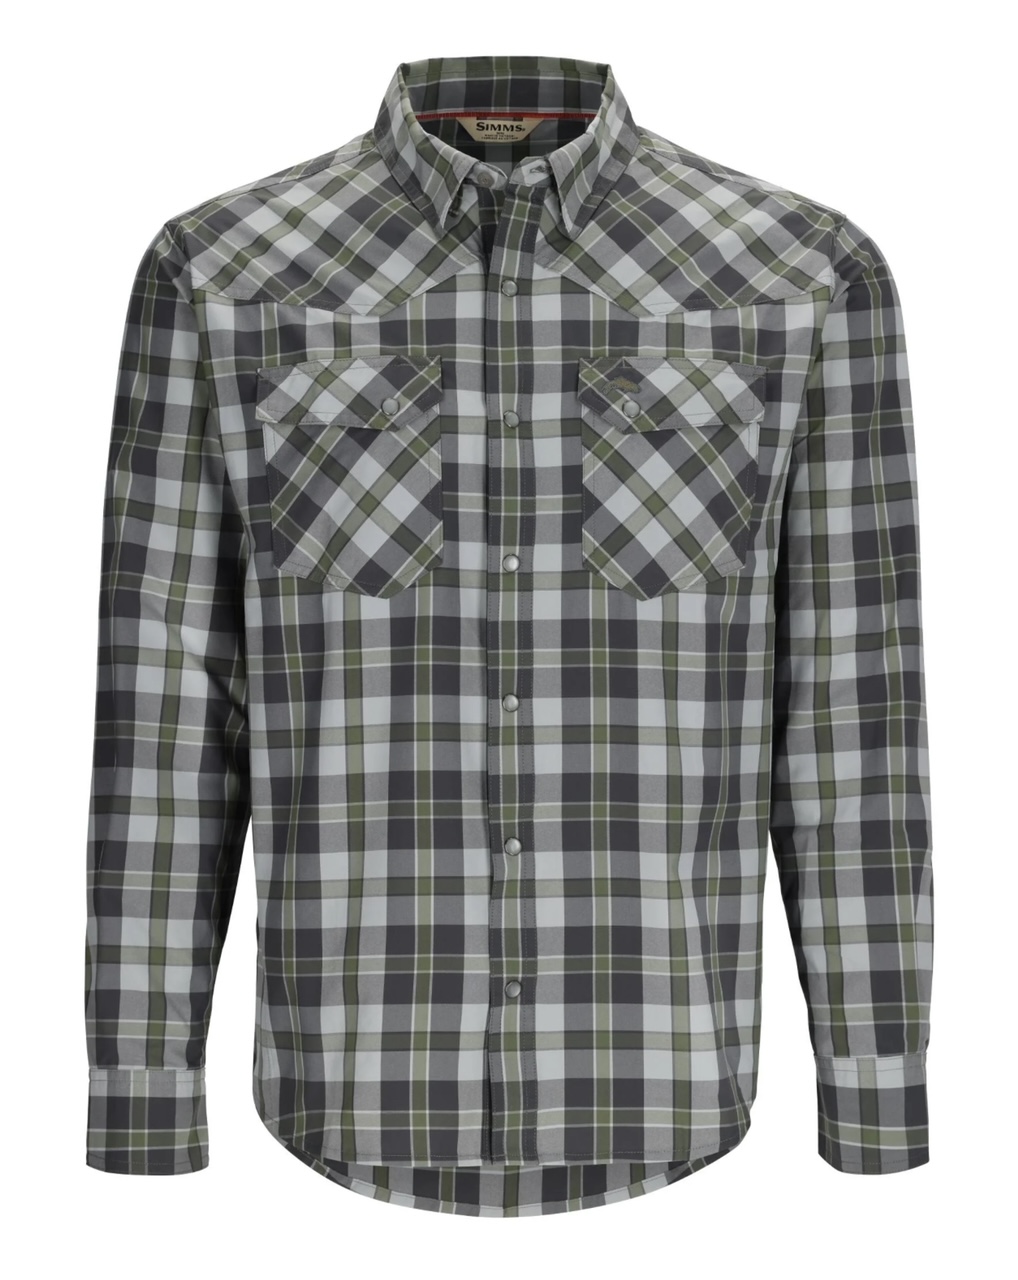 Simms M's Brackett LS Shirt - Backcountry Clover Plaid - XXL